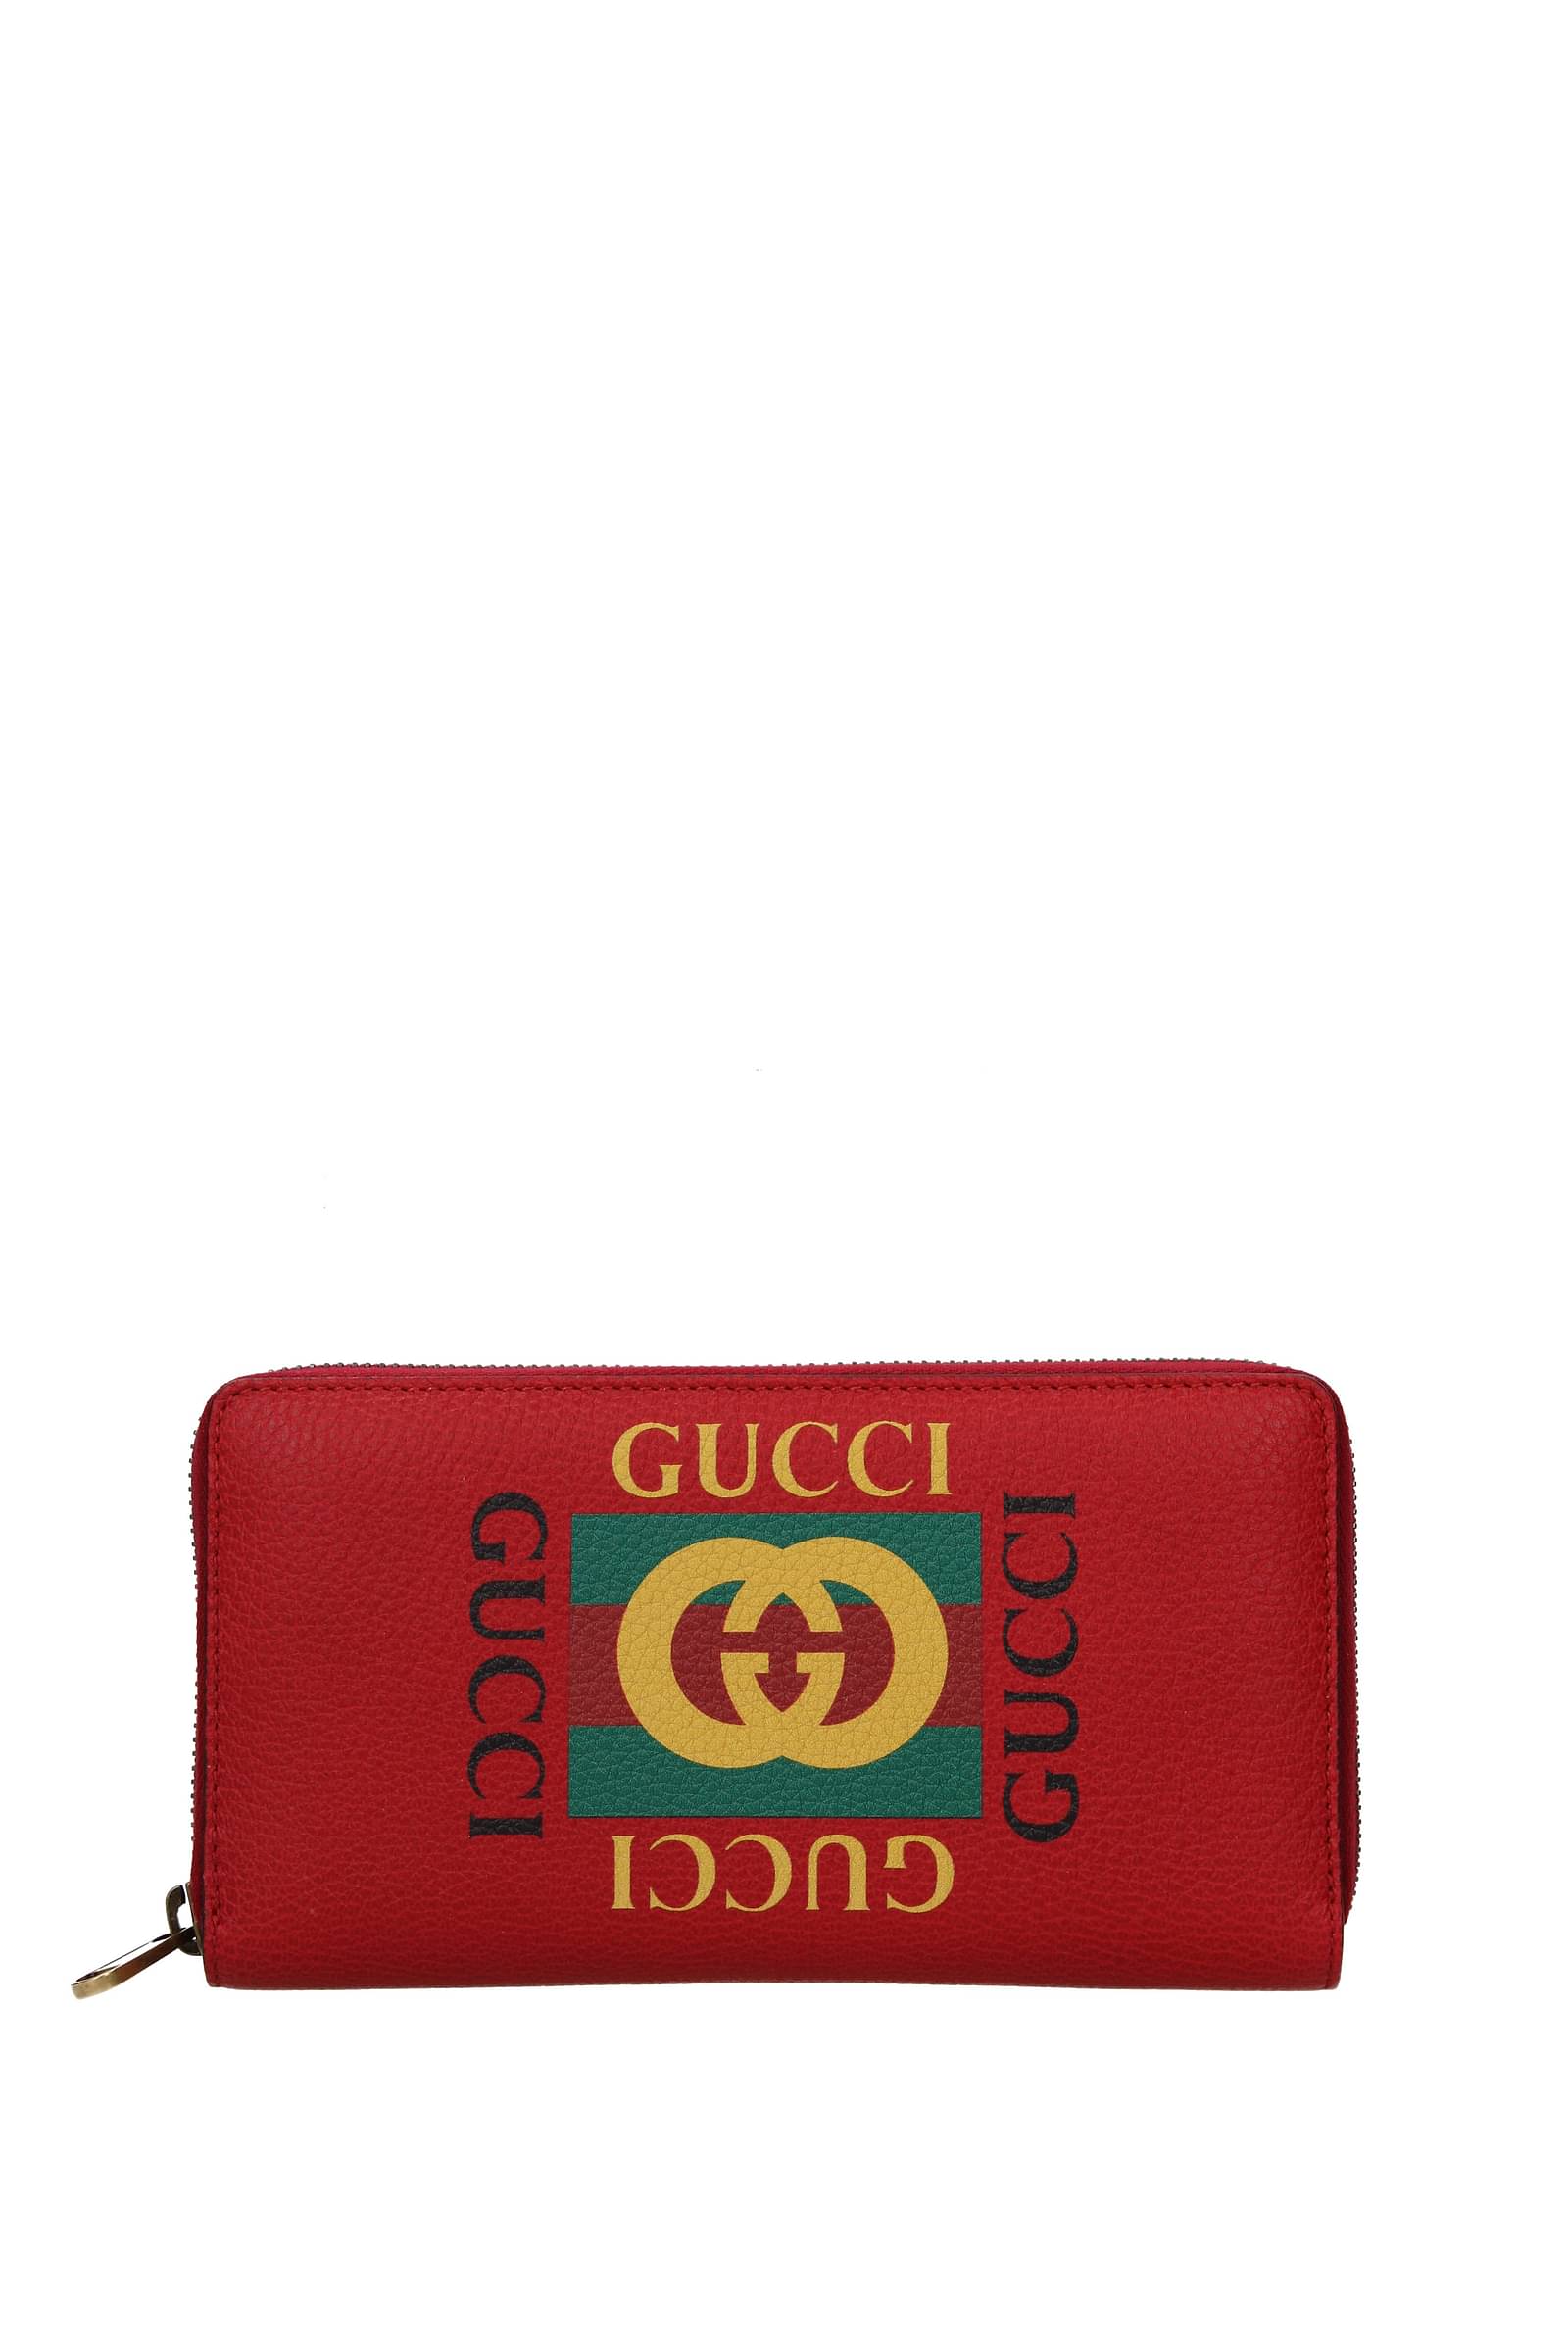 Portafogli Gucci: saldi oltre il 60%, acquista ora | B-Exit